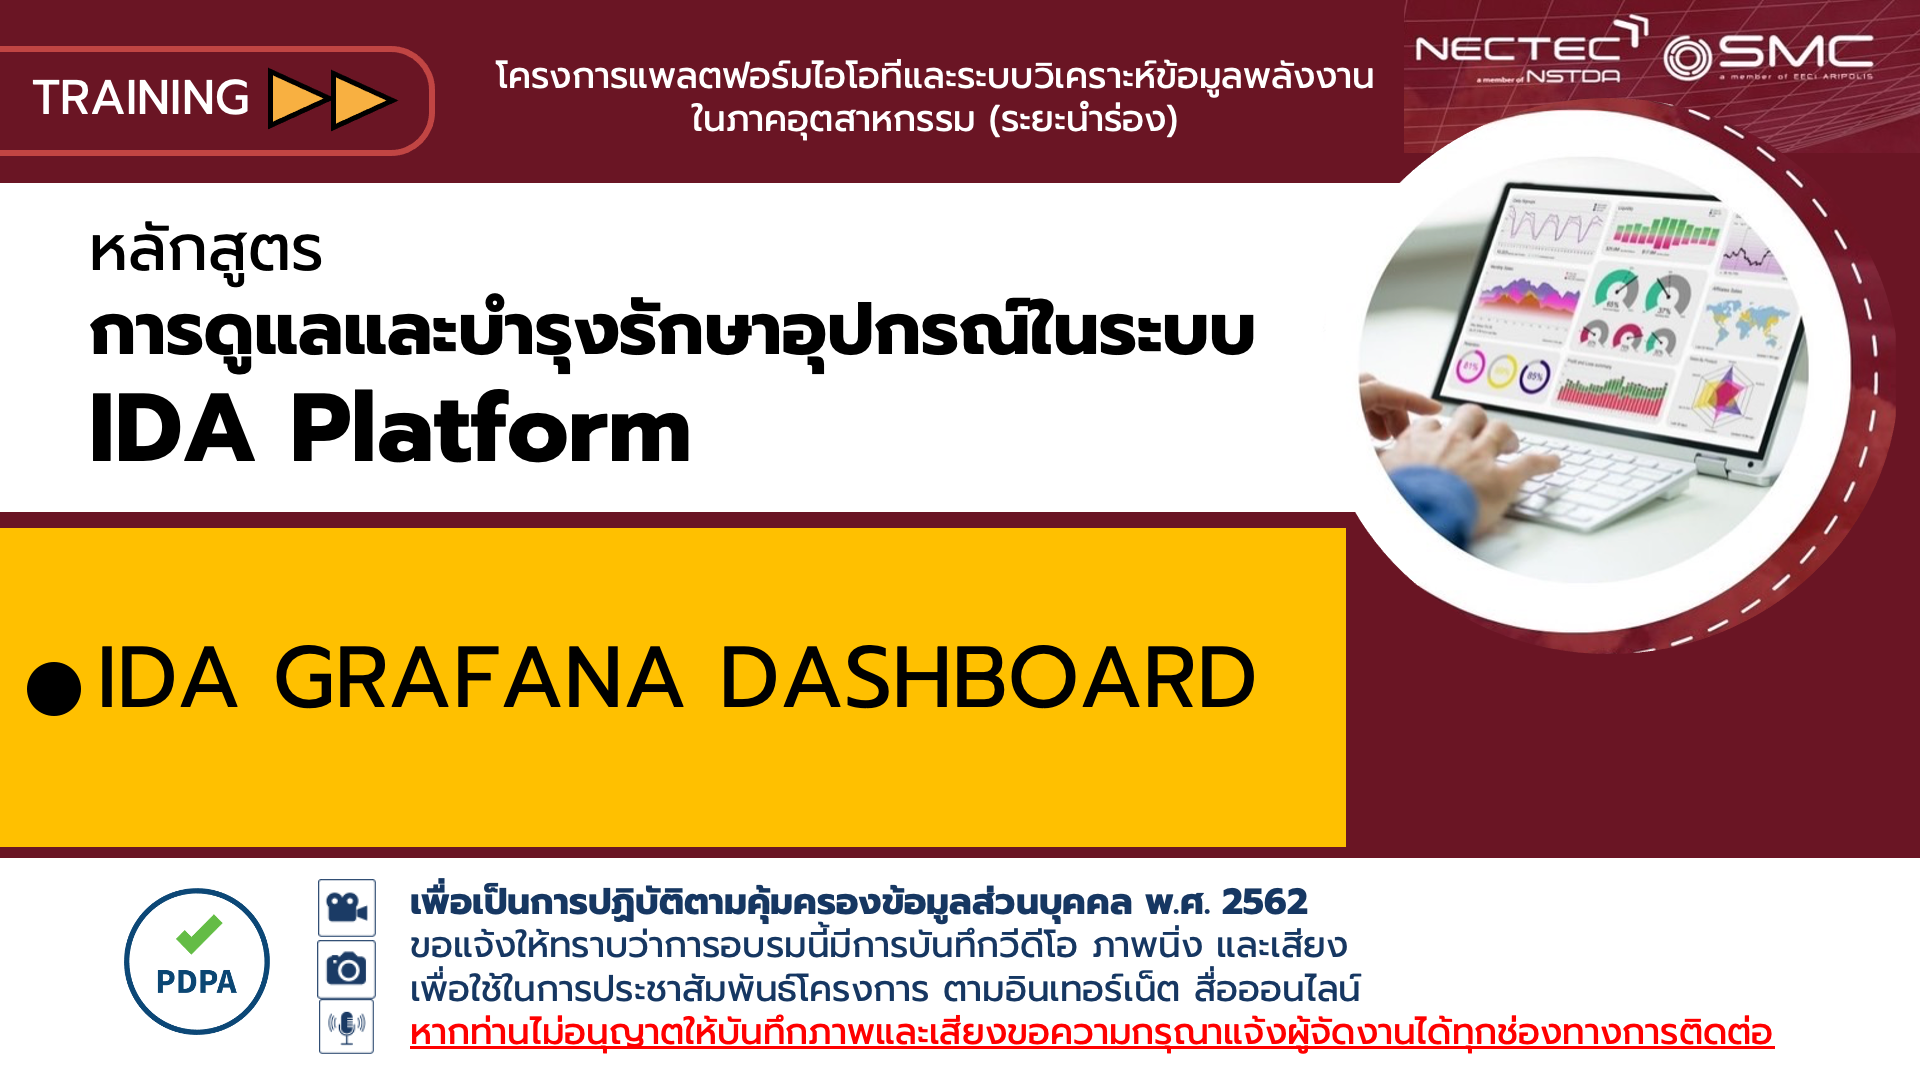 แนะนำการใช้งาน IDA Grafana Dashboard Online